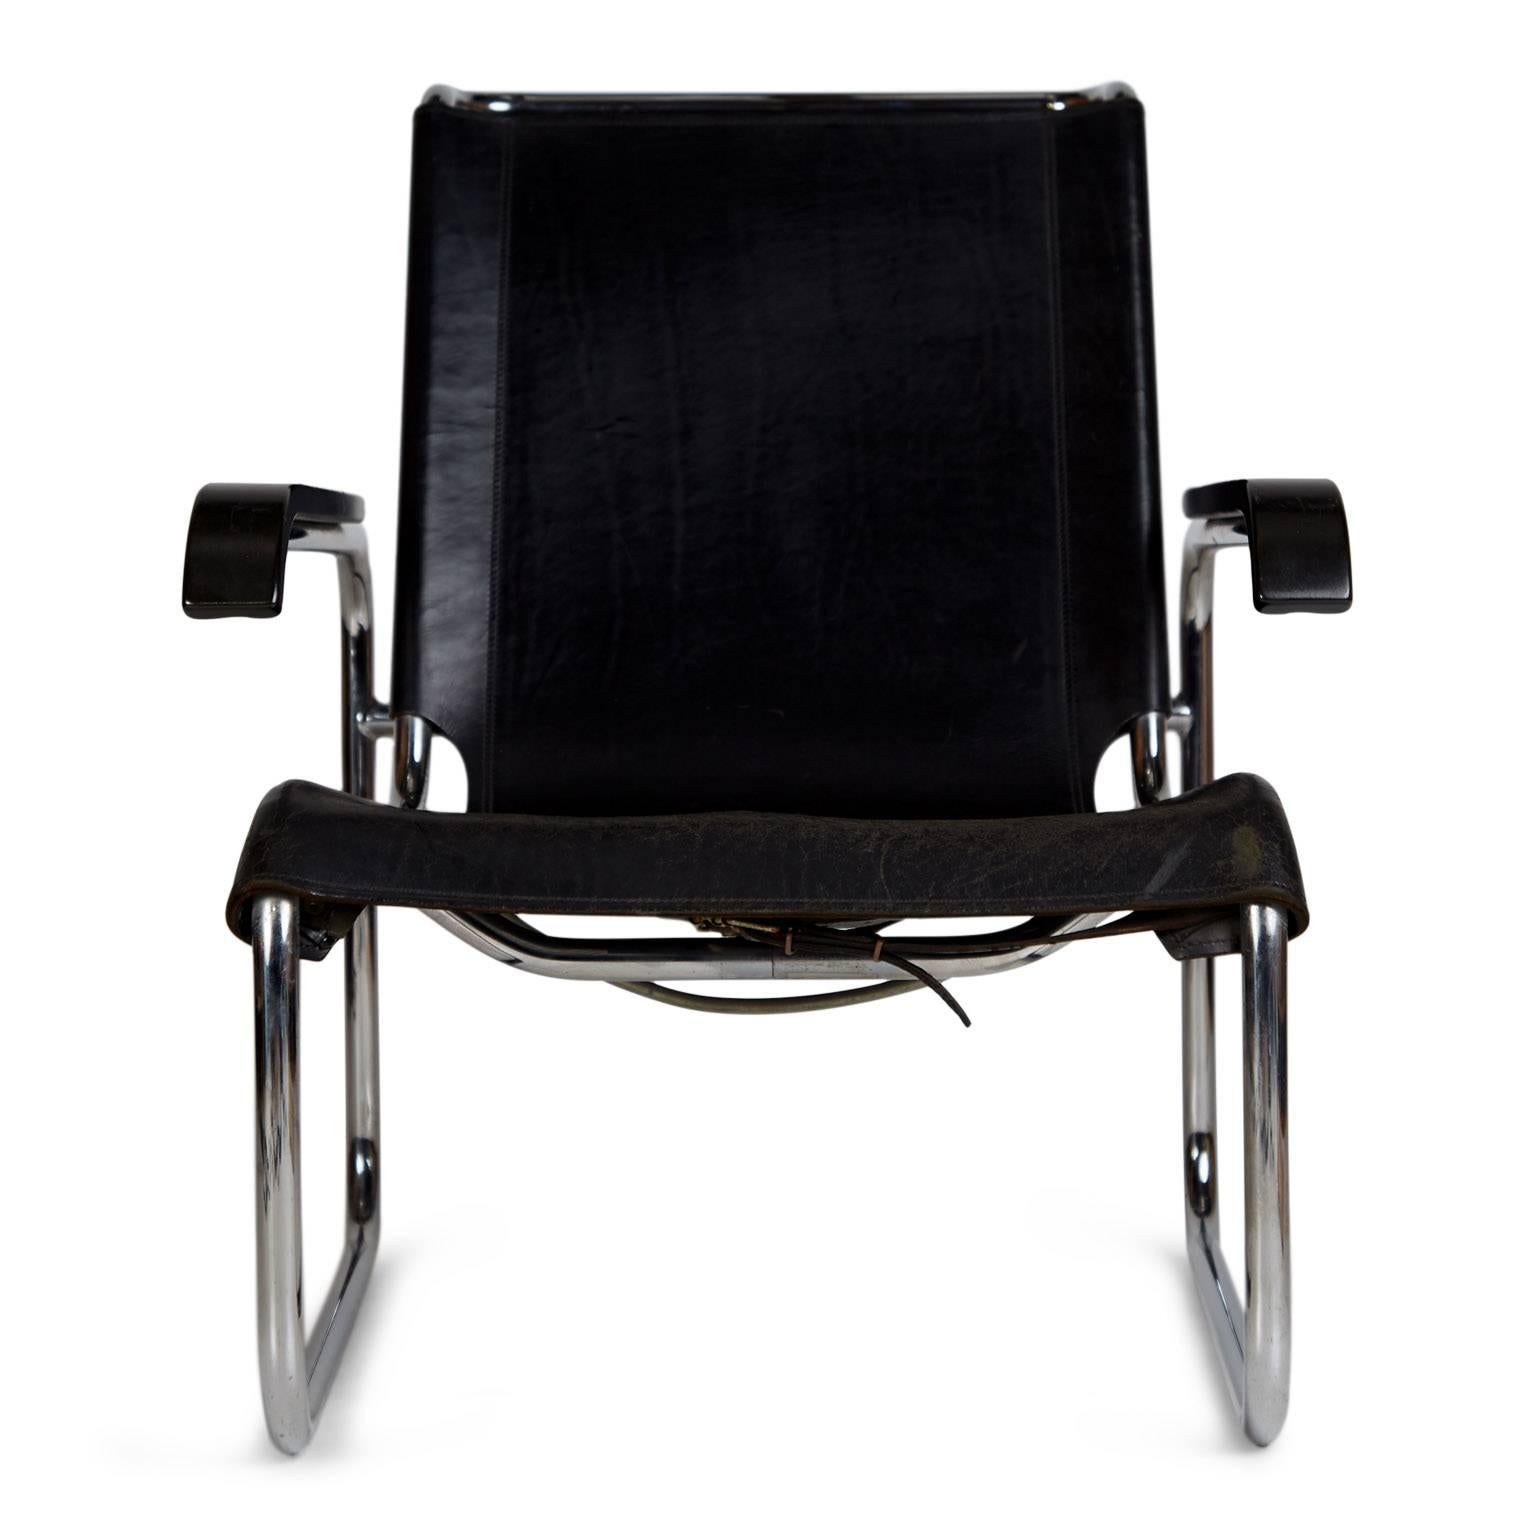 Wunderschöne Exemplare des ikonischen Sessels B-35, der 1928 von Marcel Breuer für Thonet entworfen wurde.  Er wurde 1975 als Hauptstuhl in dem von Joe D'urzo für Calvin Kleins Wohnung in NYC entworfenen Wohnzimmer verwendet. 

Diese Stühle bestehen